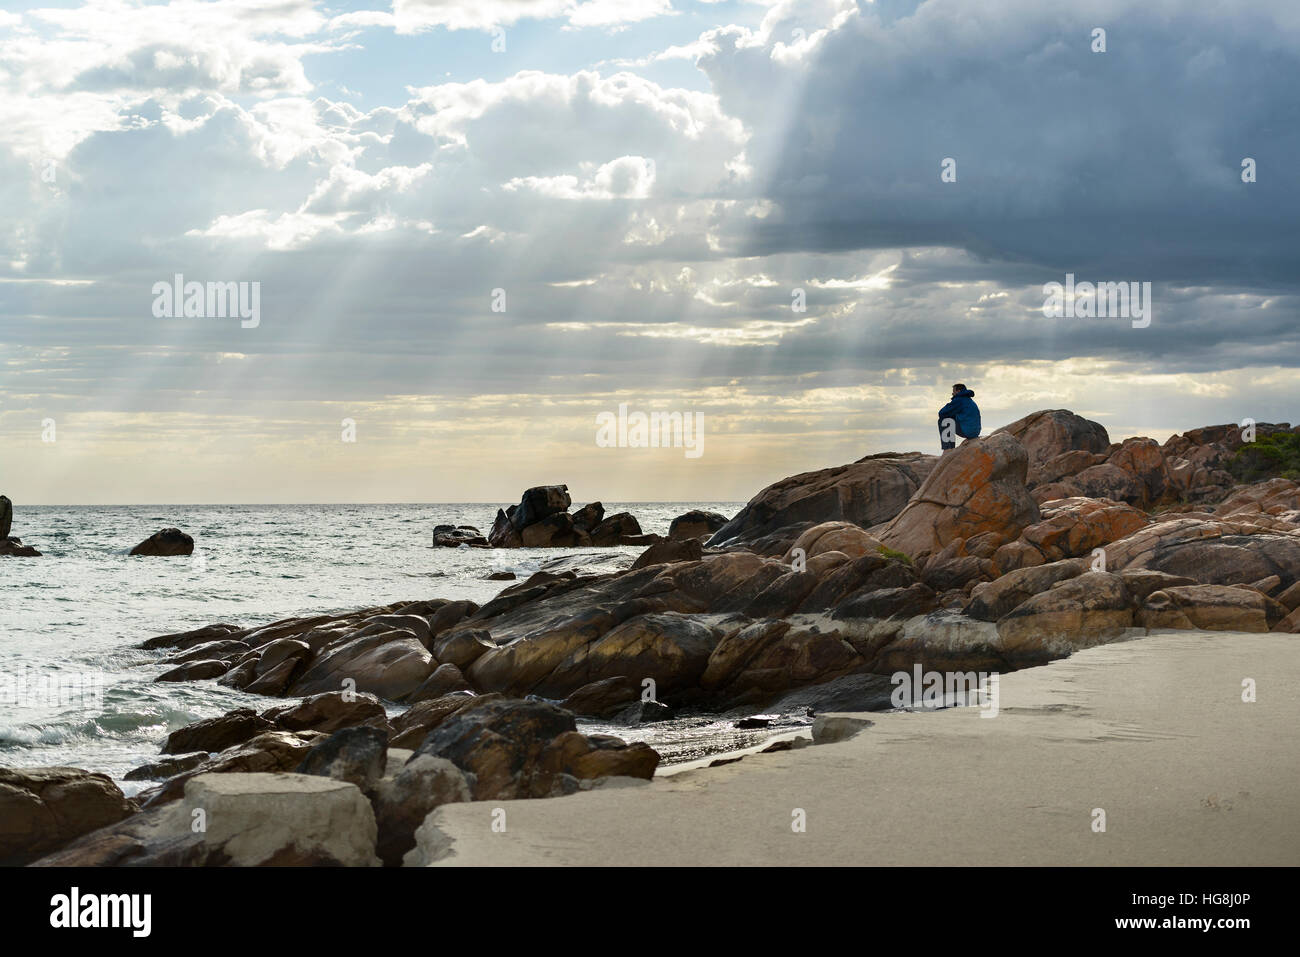 Ein Mann sitzt auf den Felsen an einem Strand, Blick auf den Ozean mit Göttern Strahlen Sonnenlicht durch Wolken Stockfoto